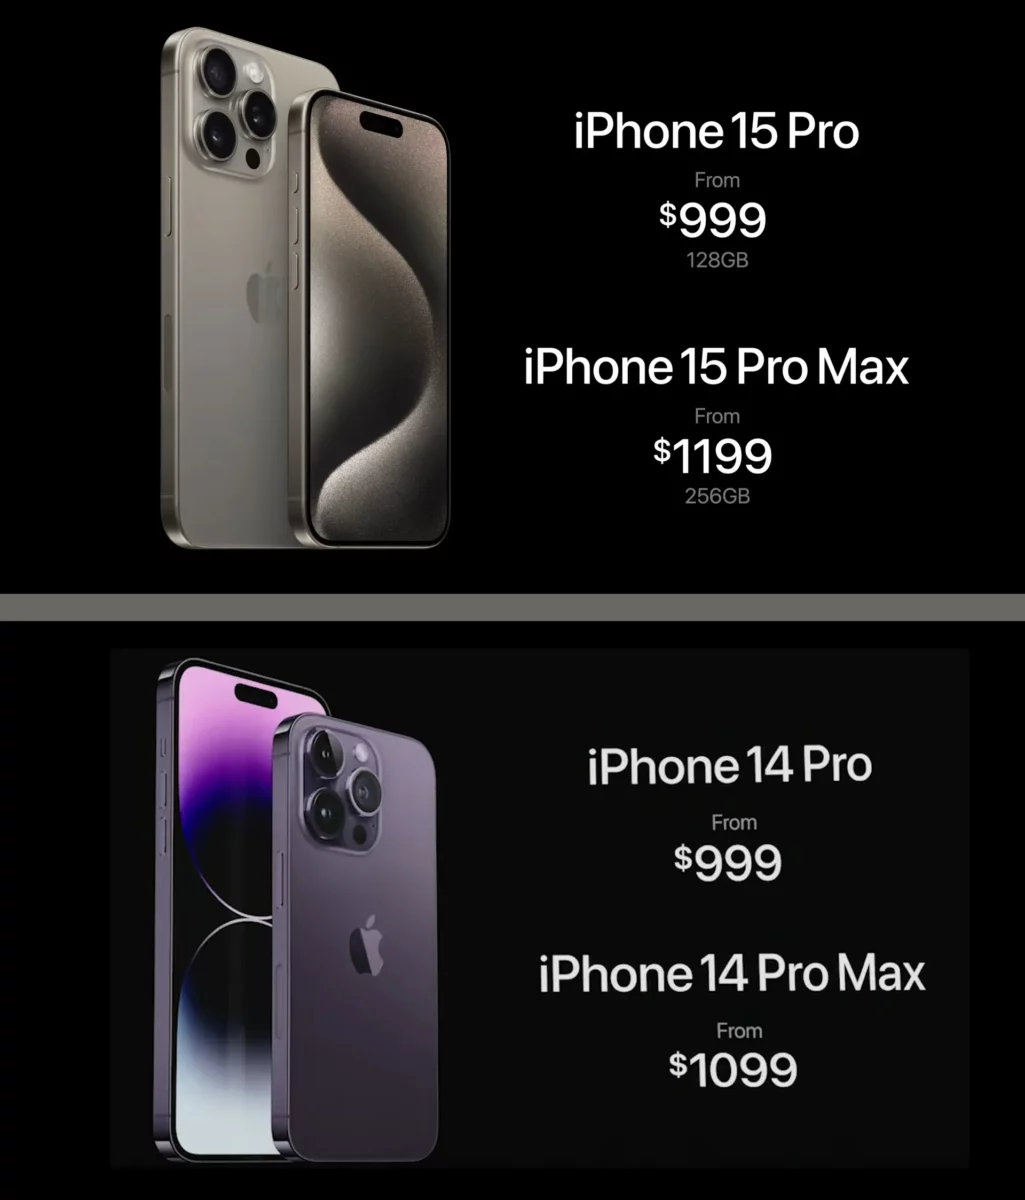 iPhone 15 Pro vs iPhone 14 Pro Price